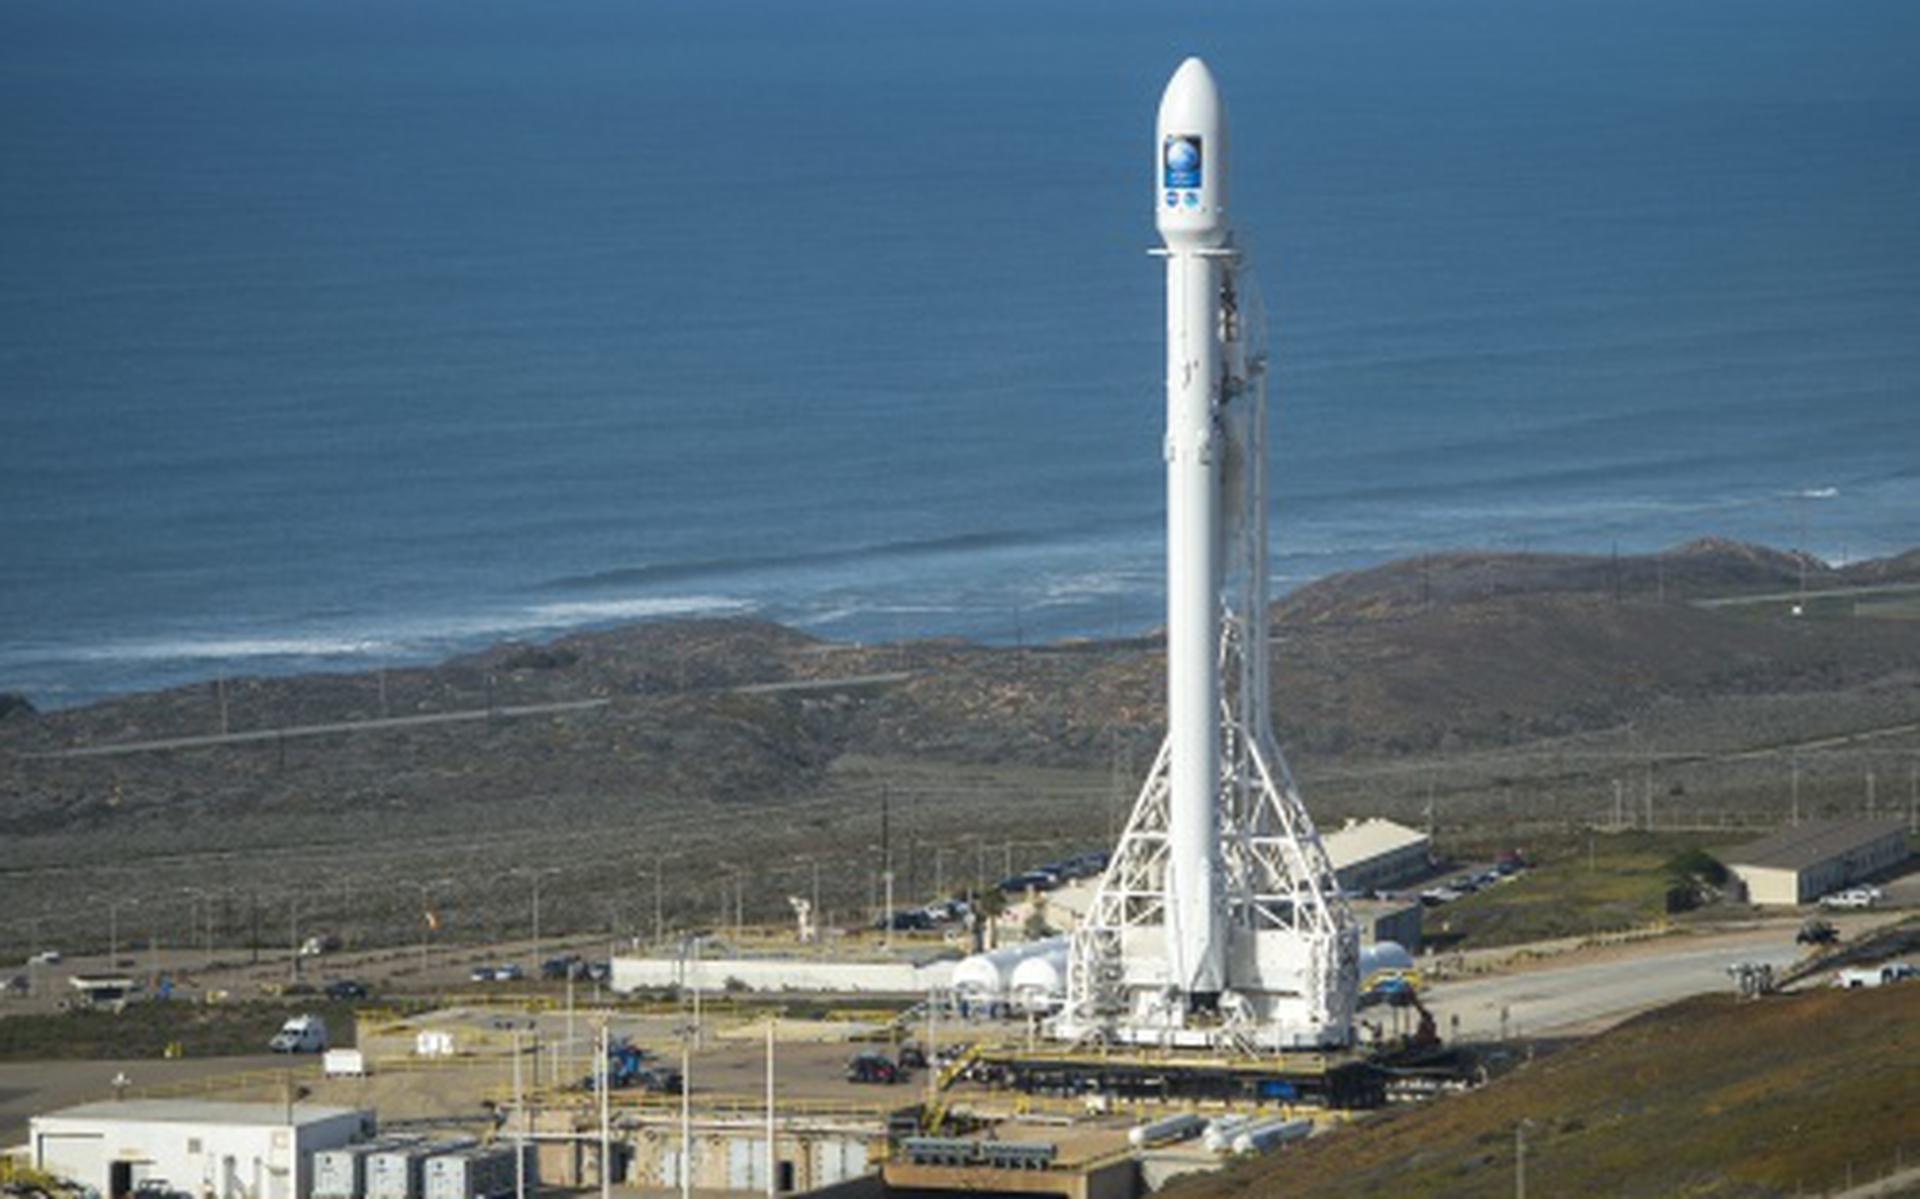 SpaceX blaast lancering op laatste moment af